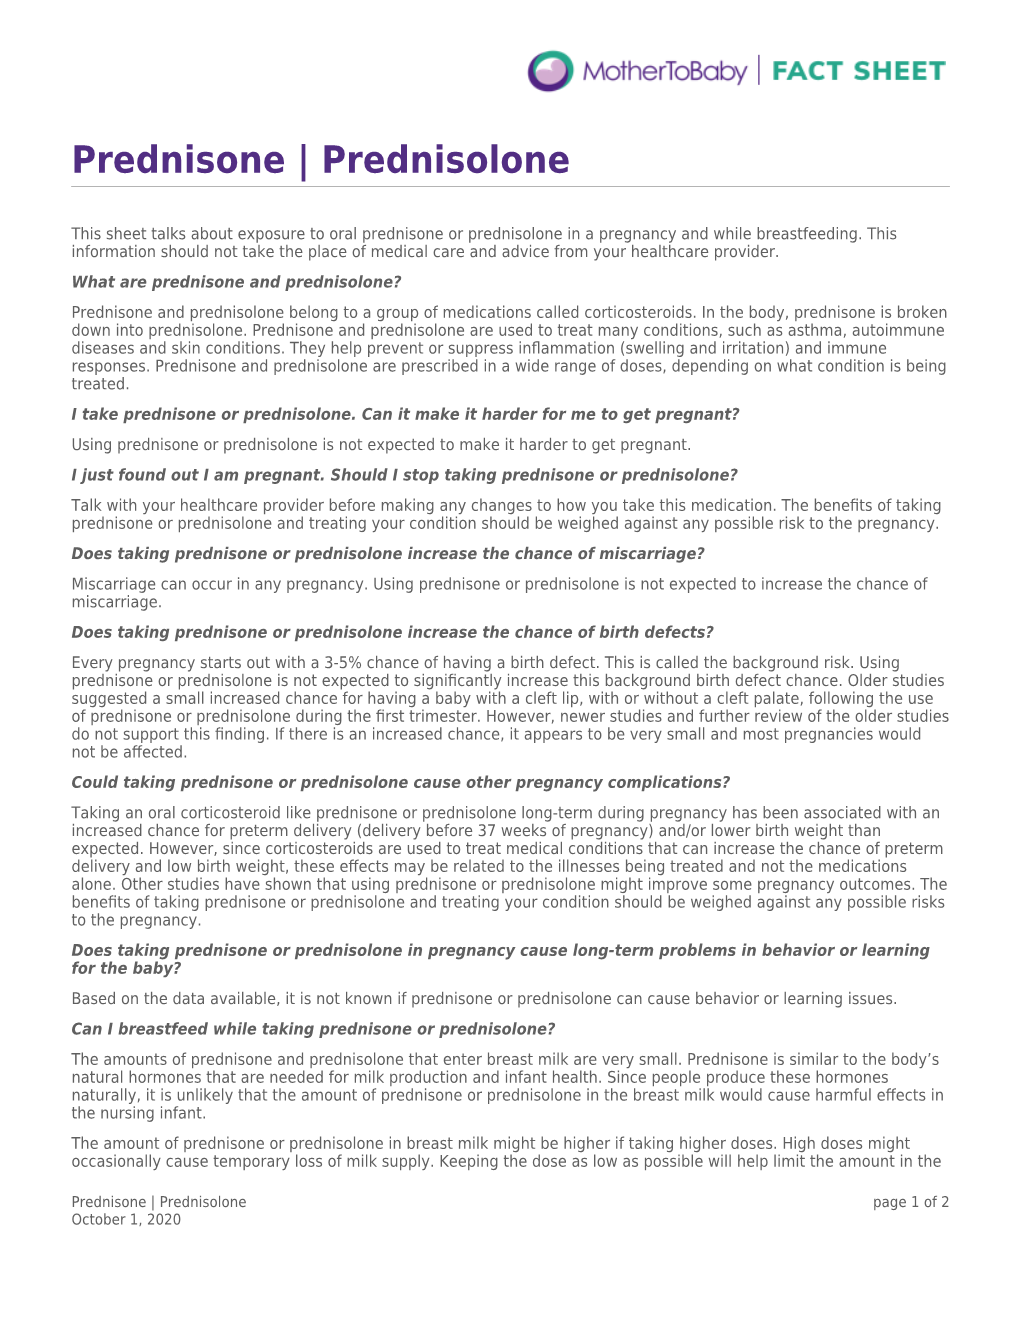 Prednisone/Prednisolone and Pregnancy